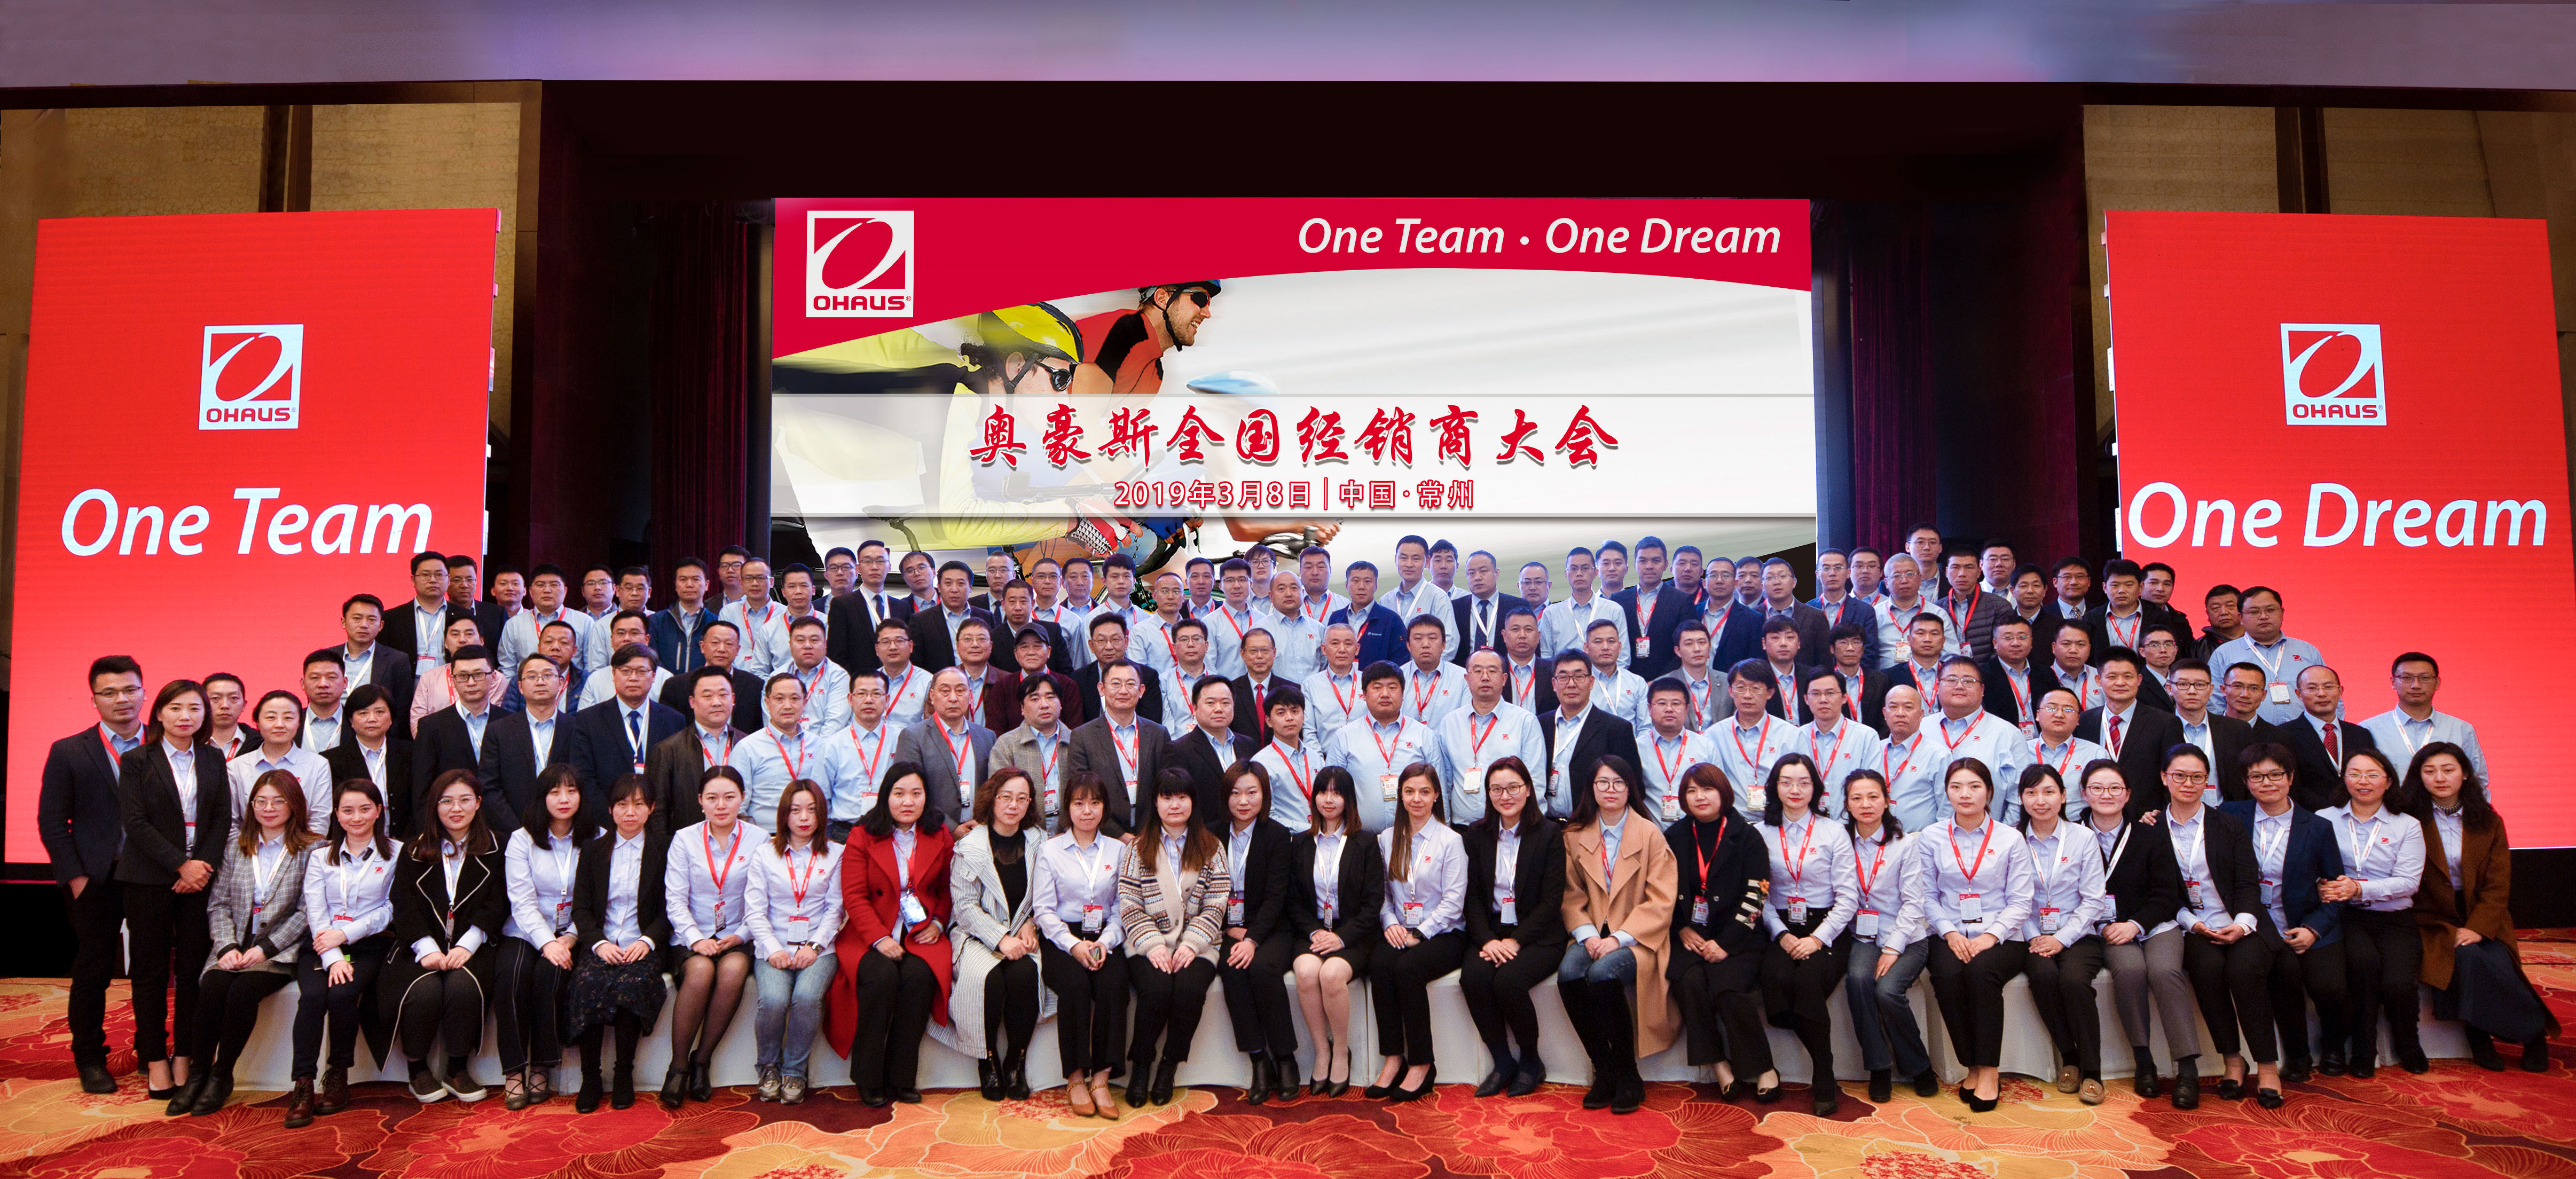 2019奥豪斯全国经销商大会——One Team, One Dream